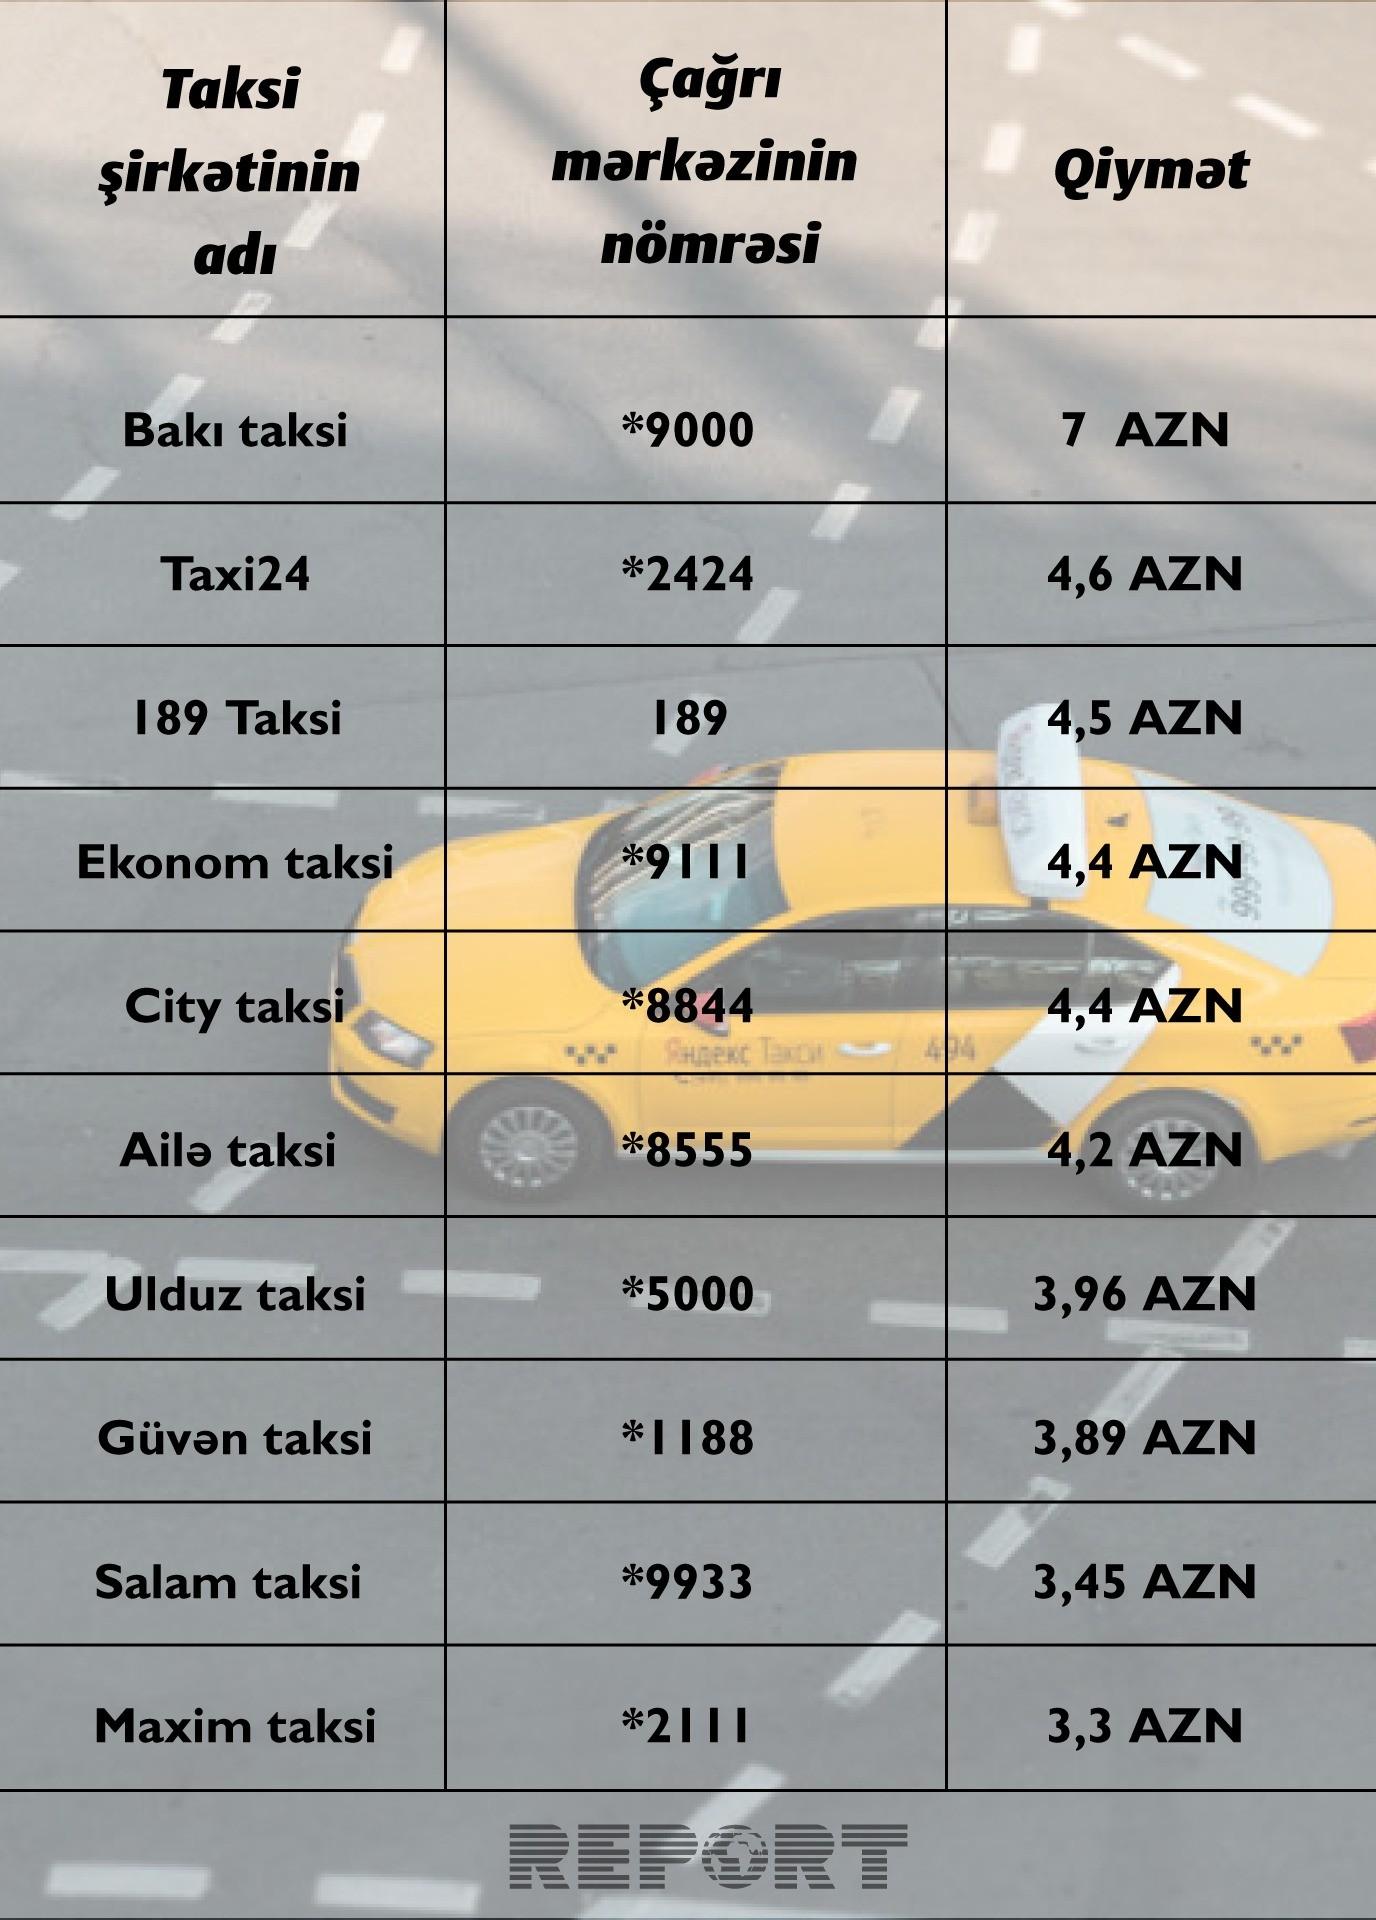 Машины для такси какие года подходят. Тариф эконом такси. Такси список автомобилей. Список автомобилей для работы. Тарифы такси.